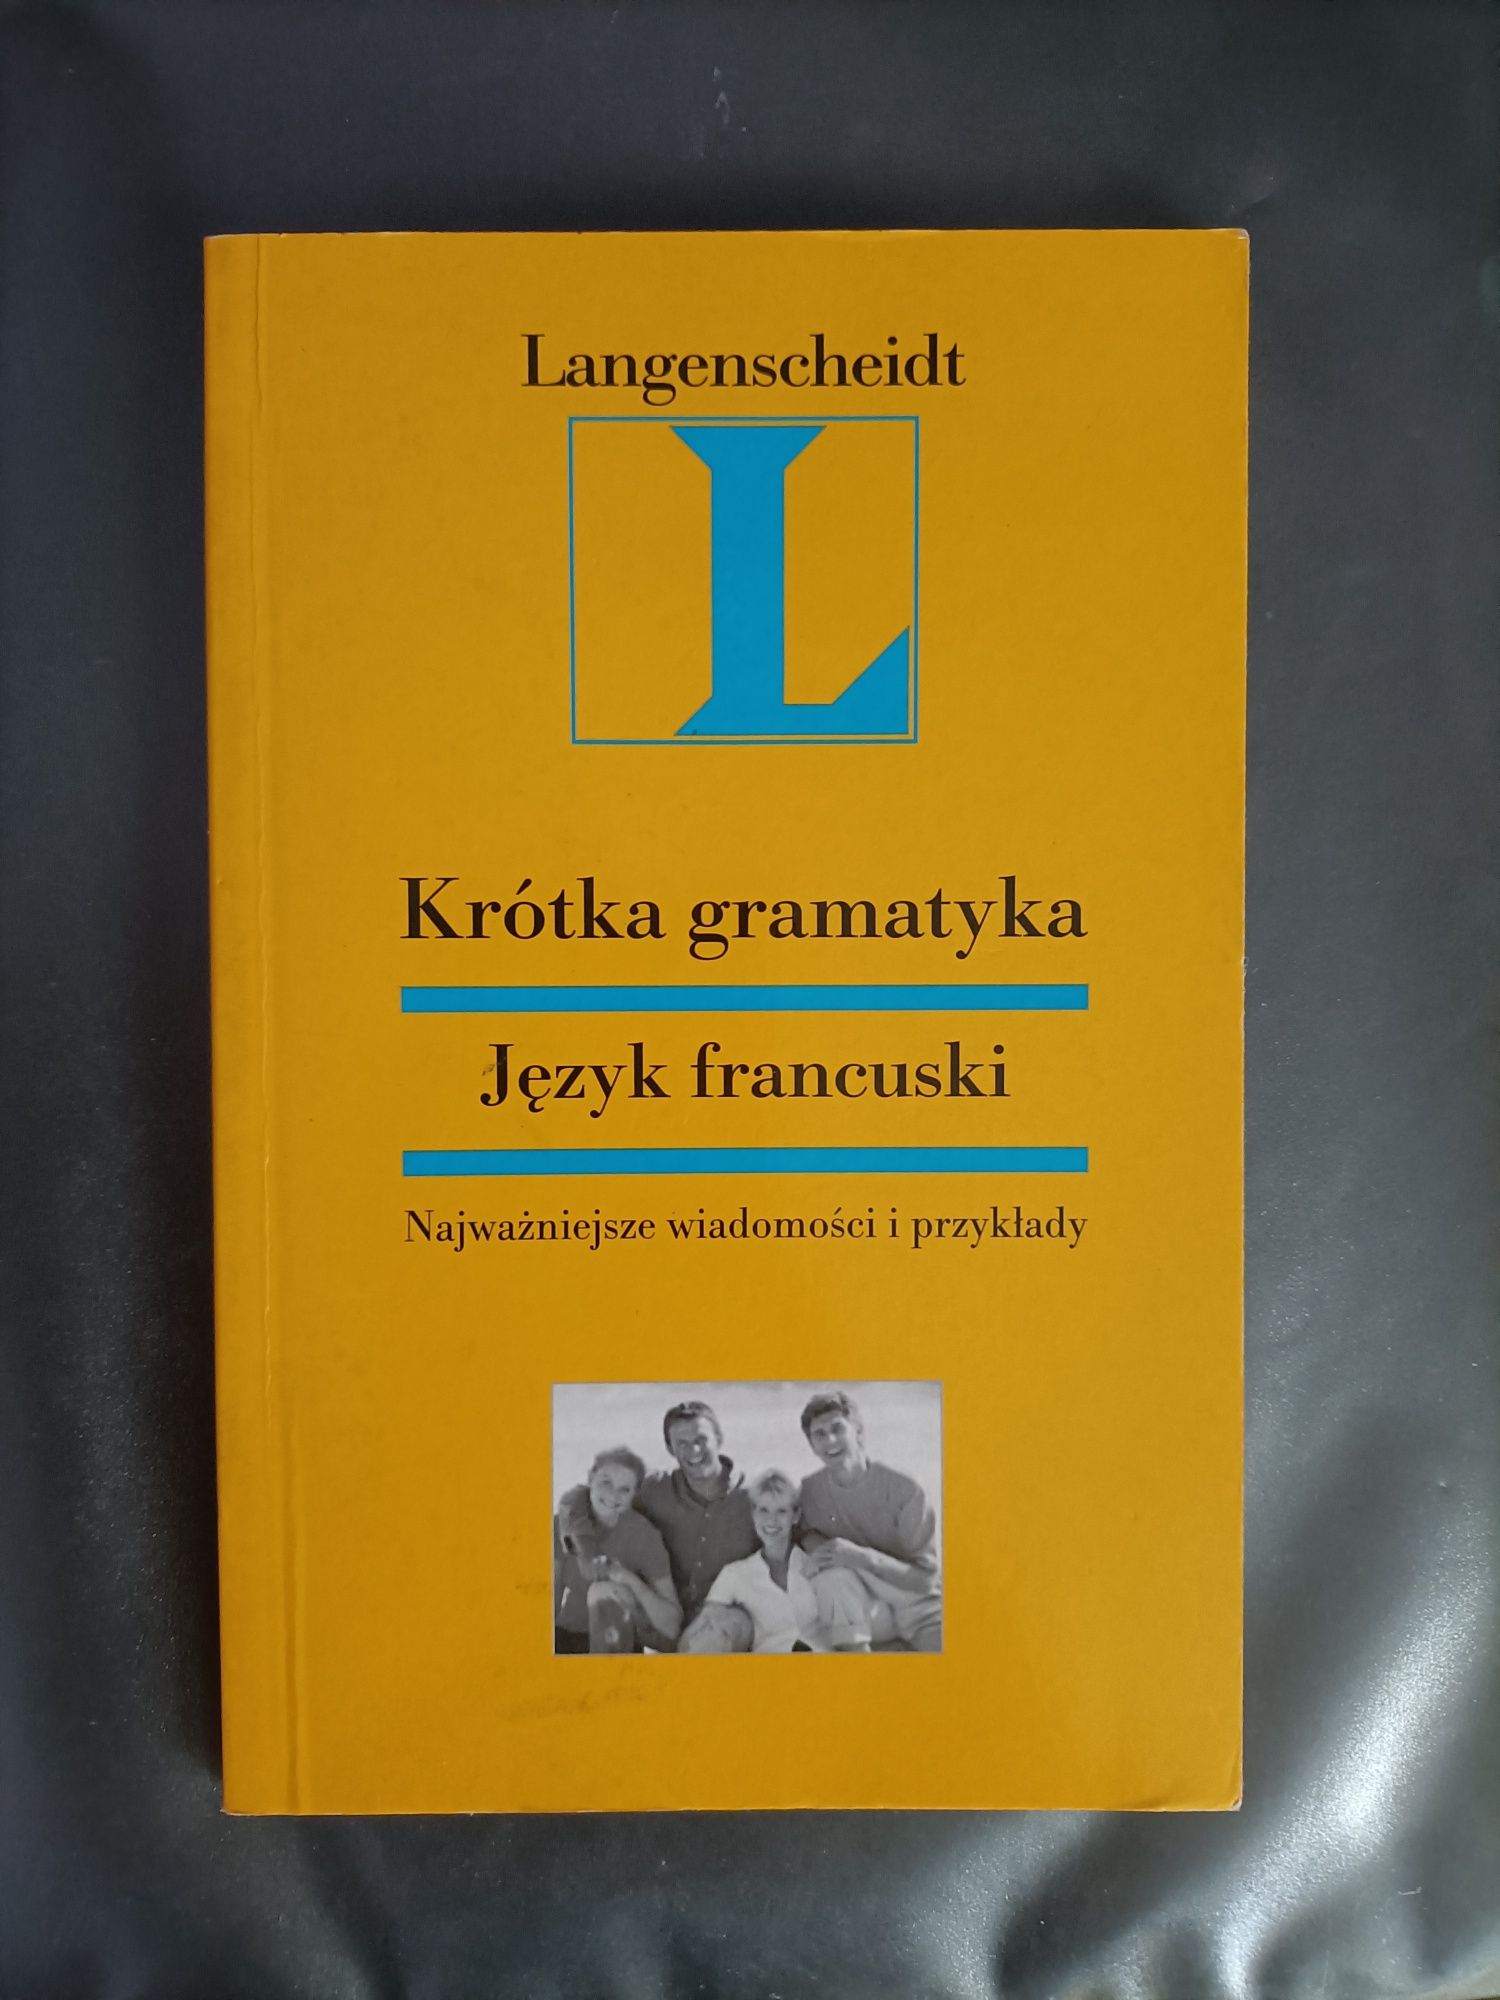 Krótka gramatyka, język francuski; Langenscheidt